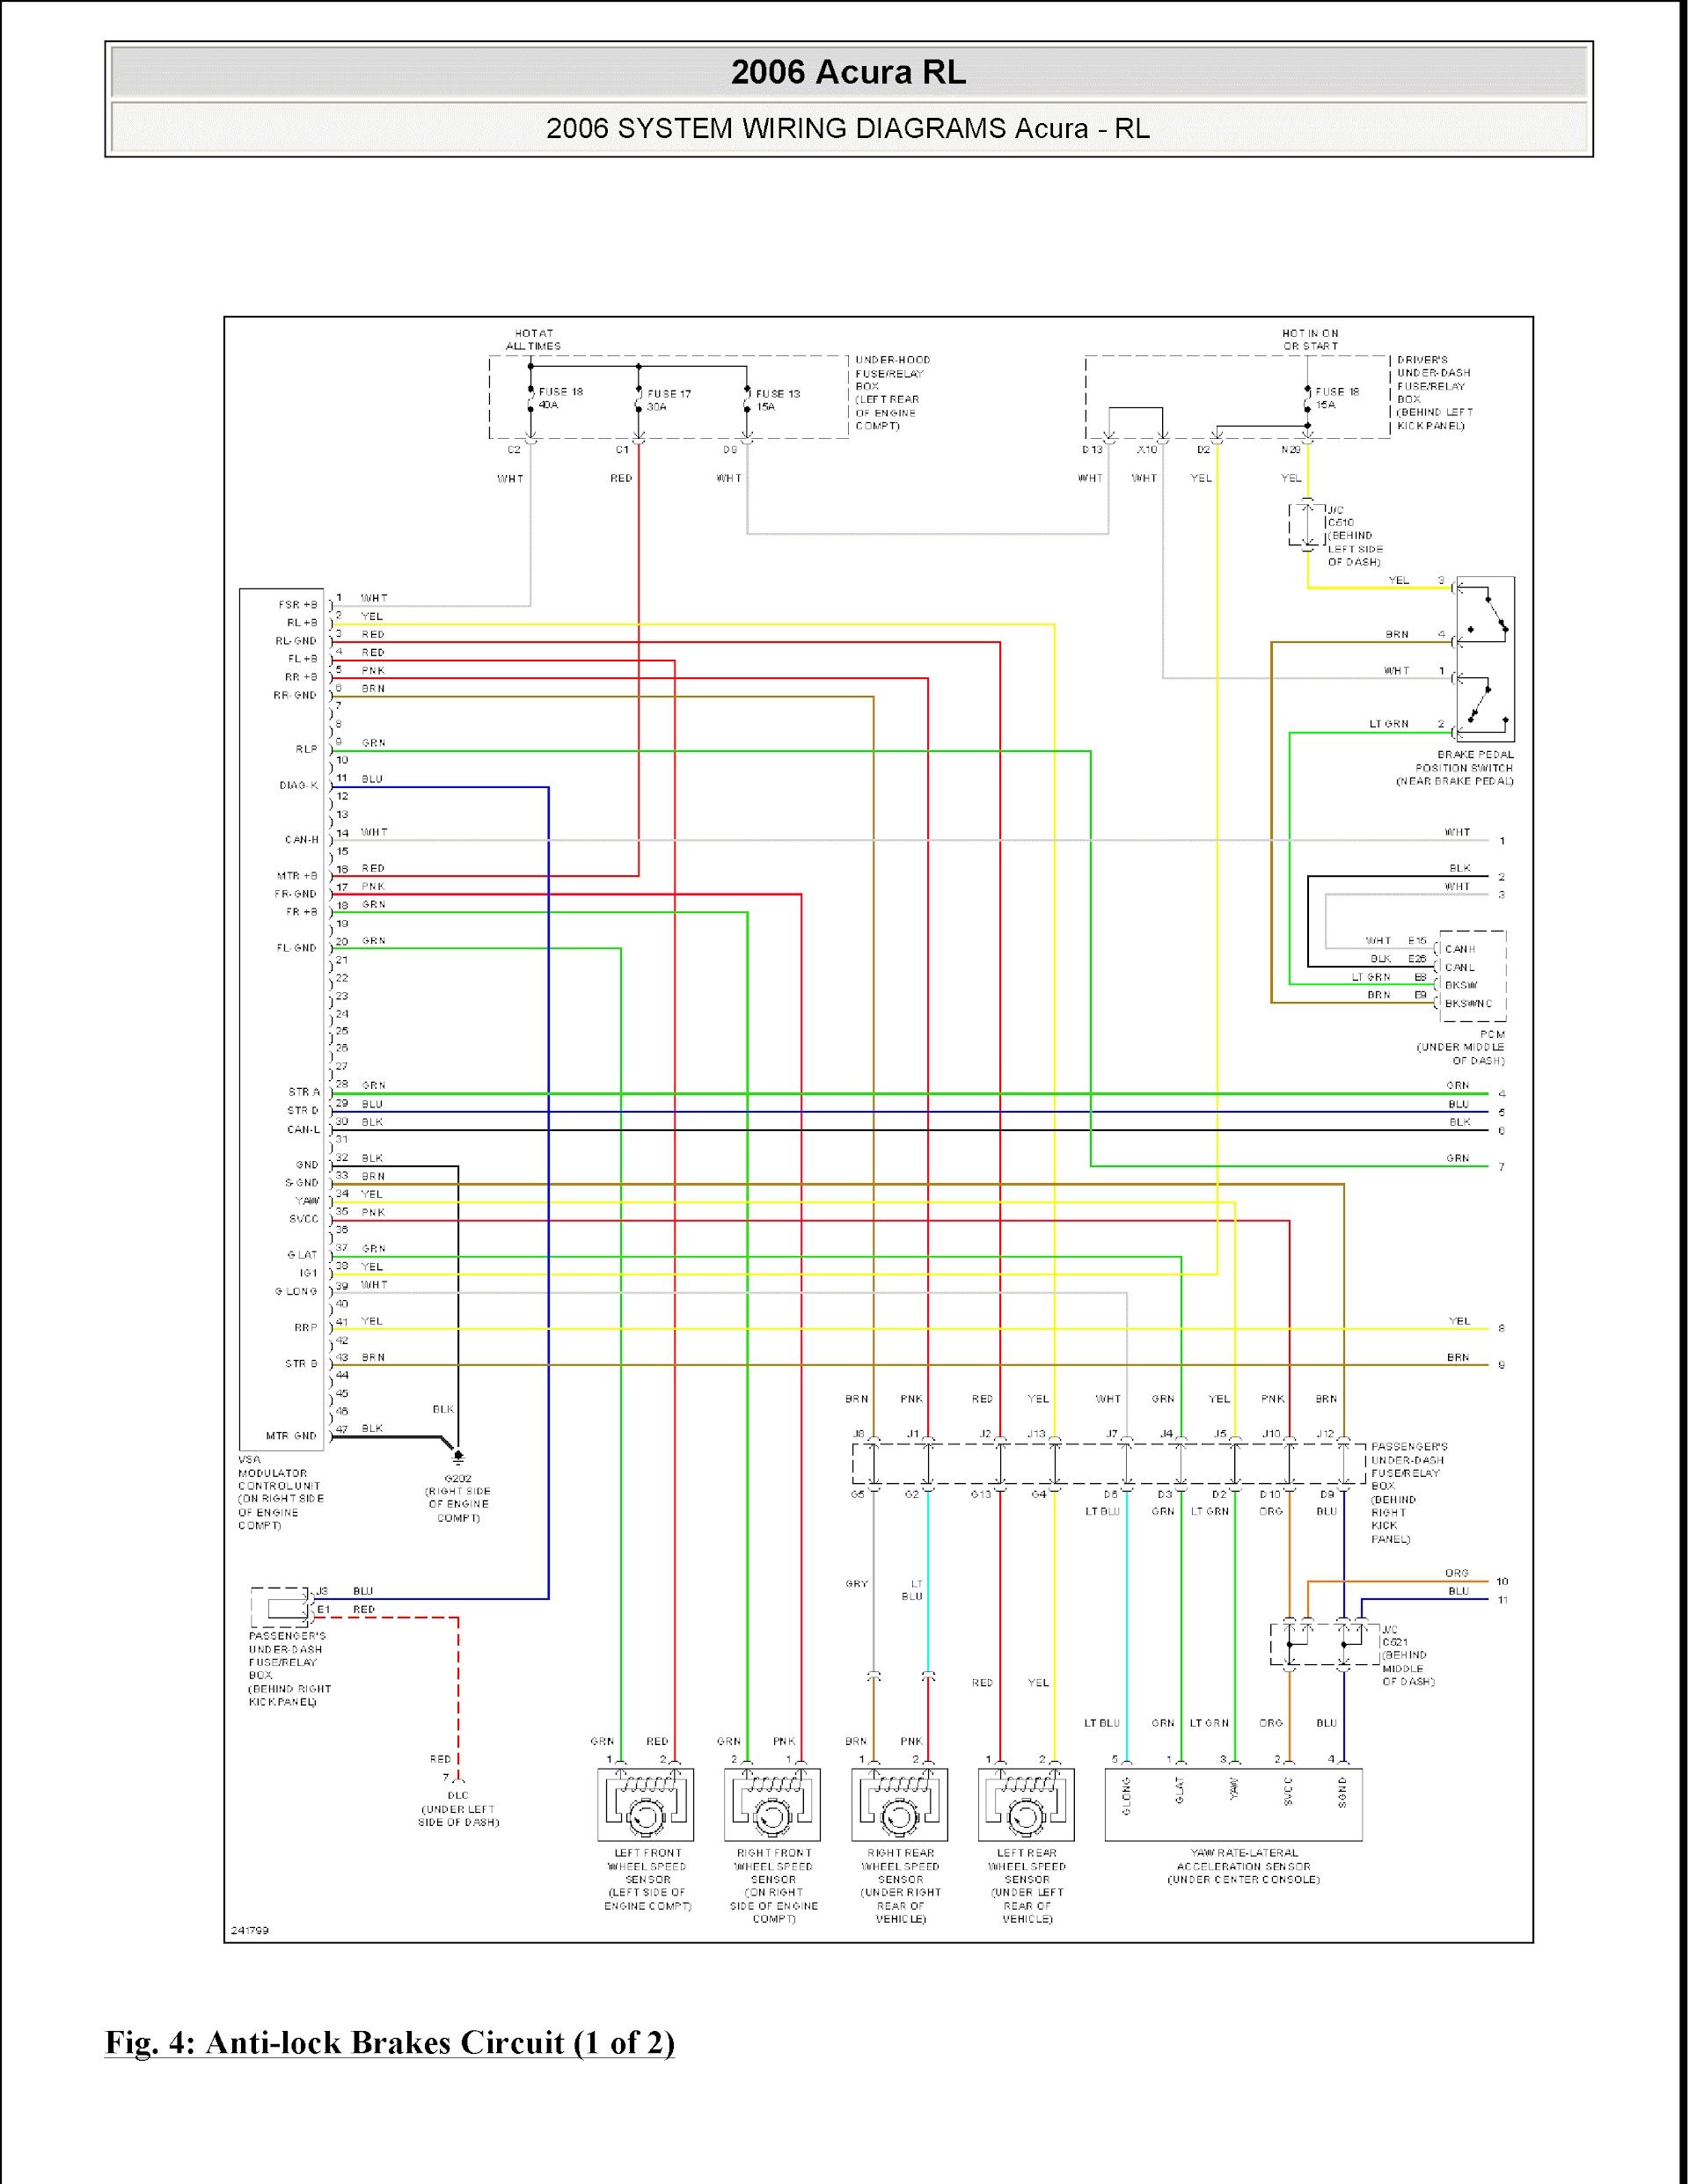 2008 Acura RL Repair Manual, Wiring Diagram